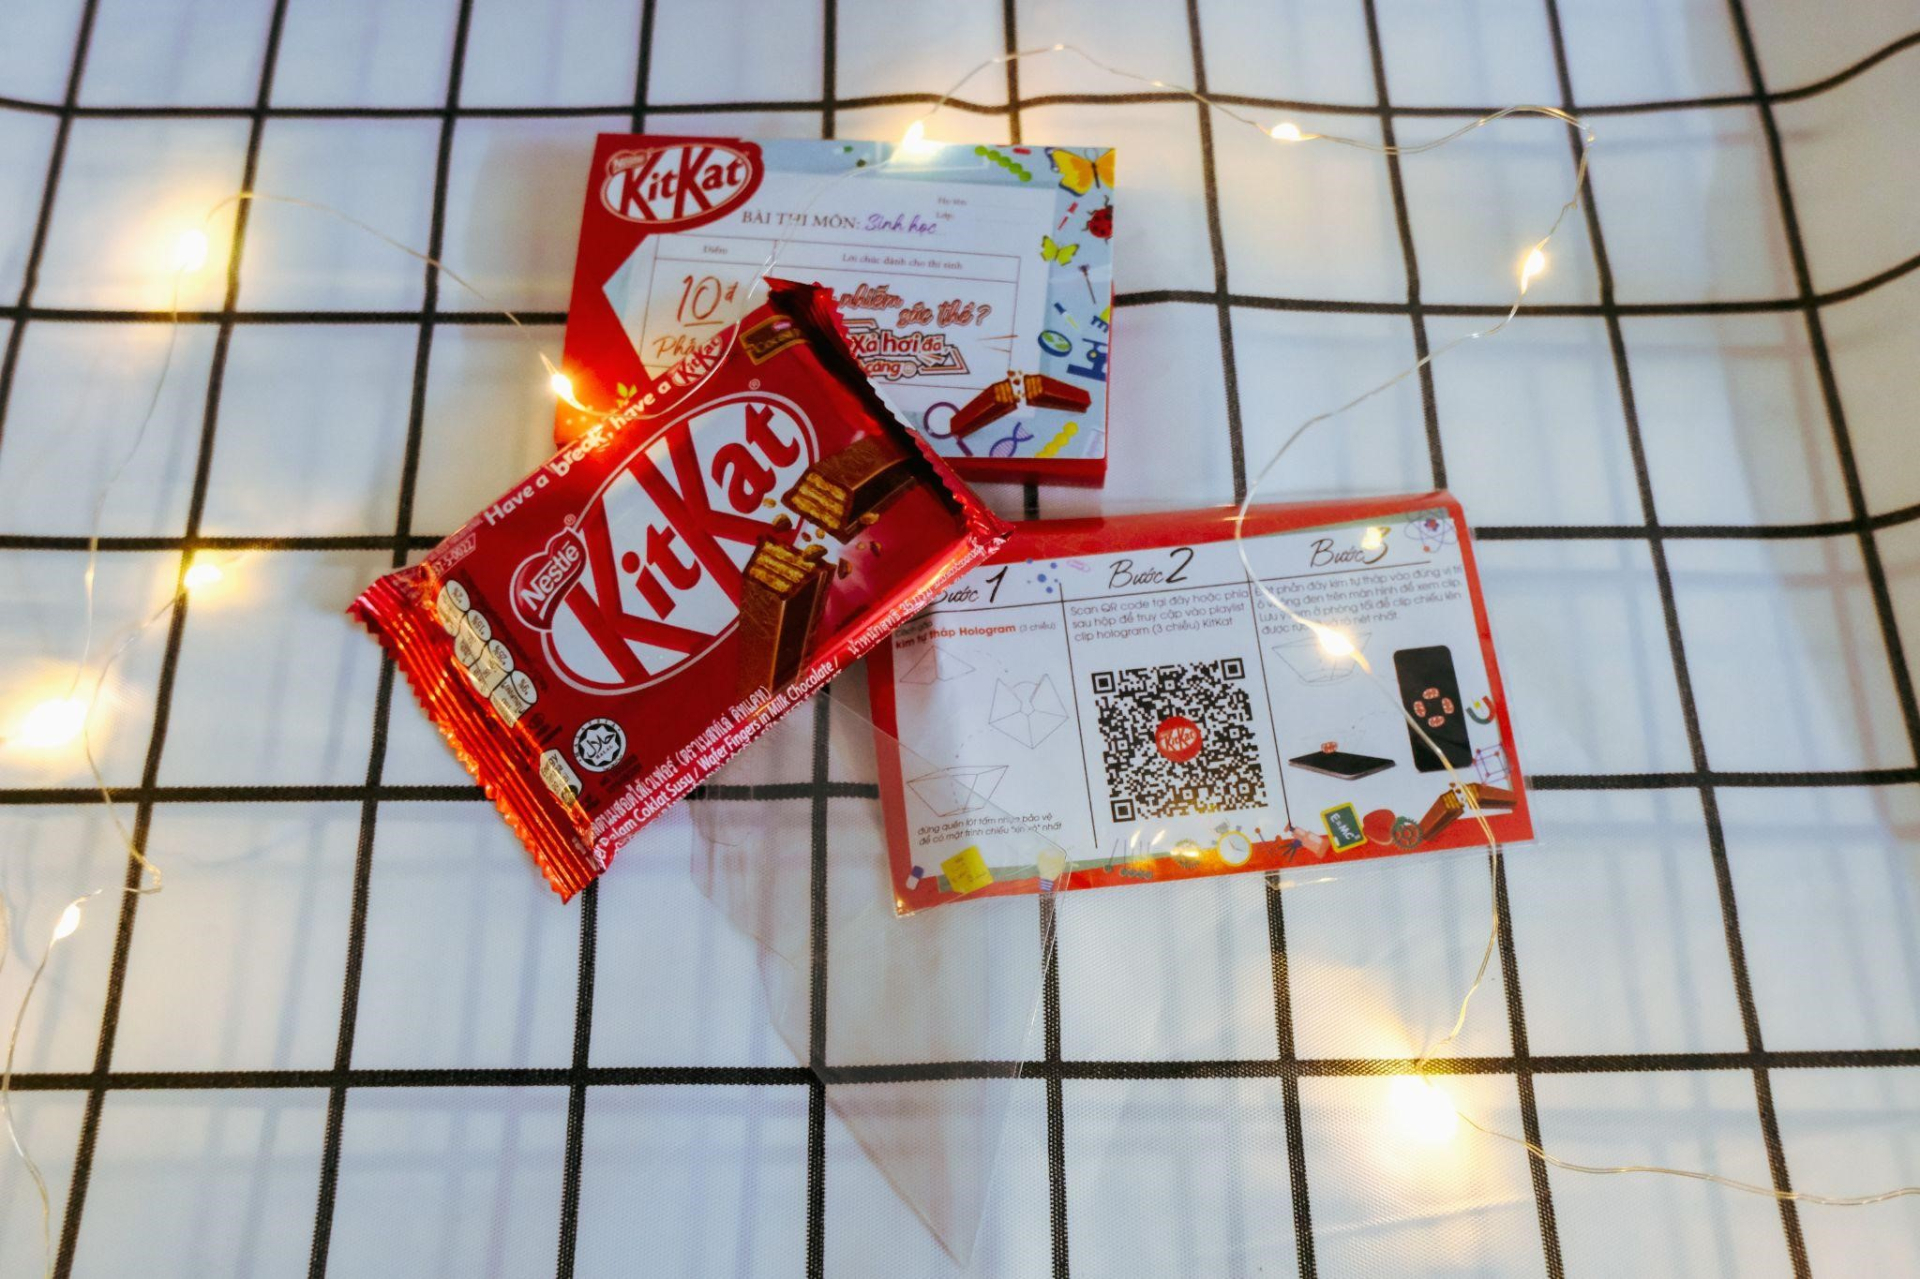 Săn lùng KitKat phiên bản giới hạn cho 6 môn thi THPT, cùng lời chúc từ Khánh Vy qua công nghệ Hologram mới lạ! - ảnh 4